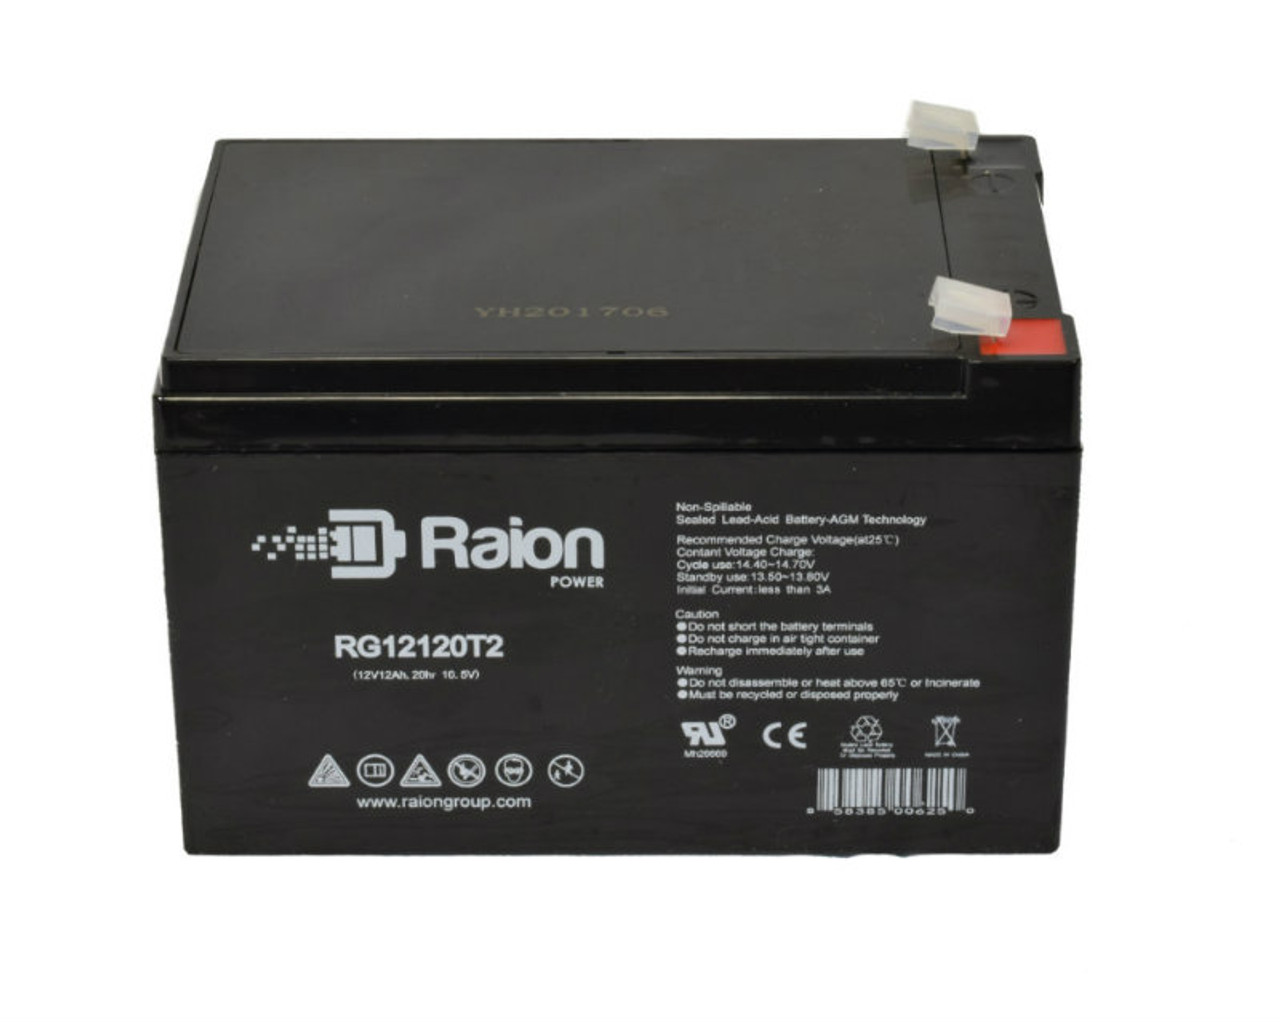 Raion Power RG12120T2 SLA Battery for EaglePicher CF-12V12